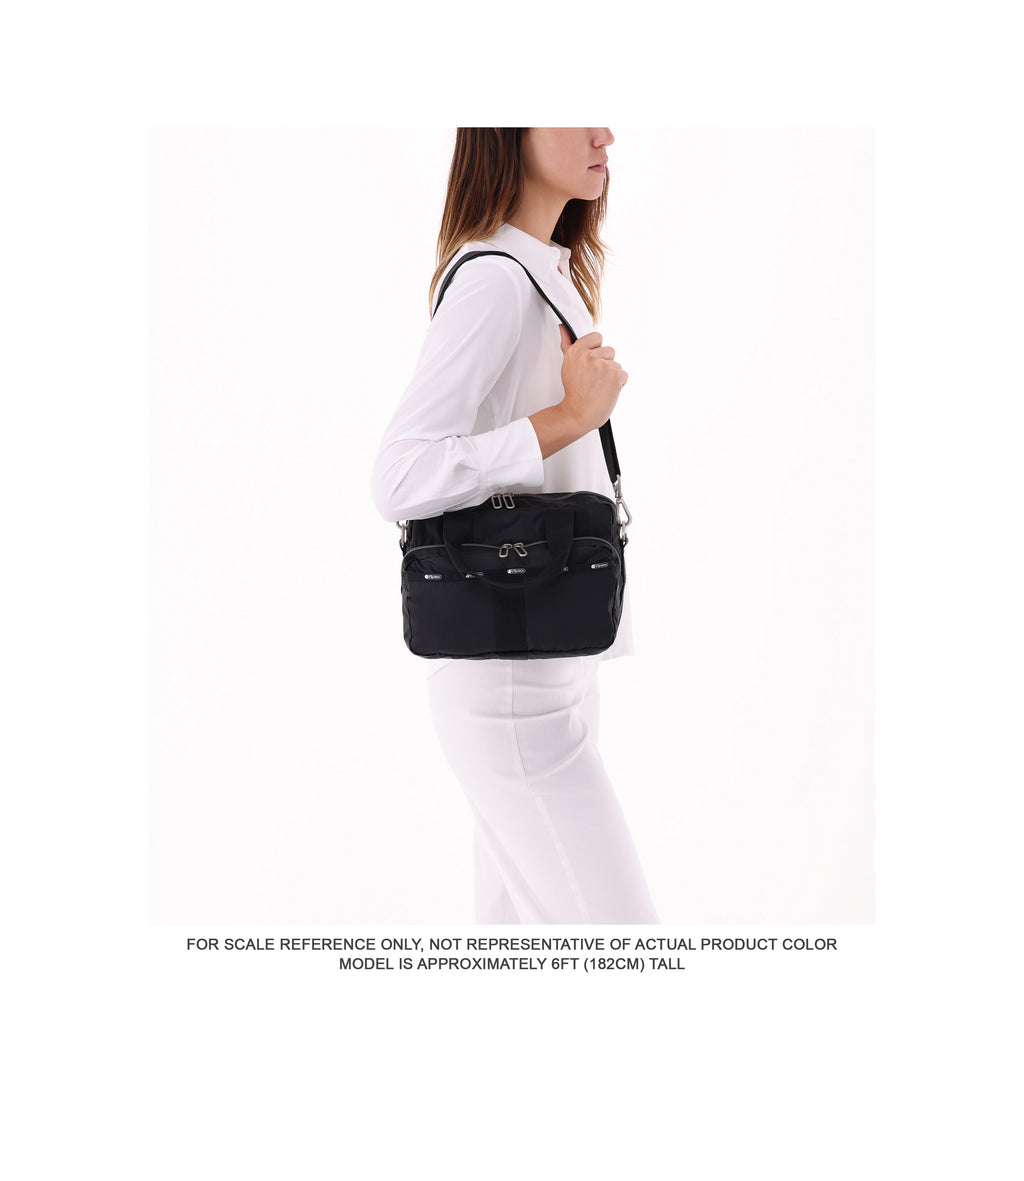 Small Metro Nylon Shoulder Bag in Black